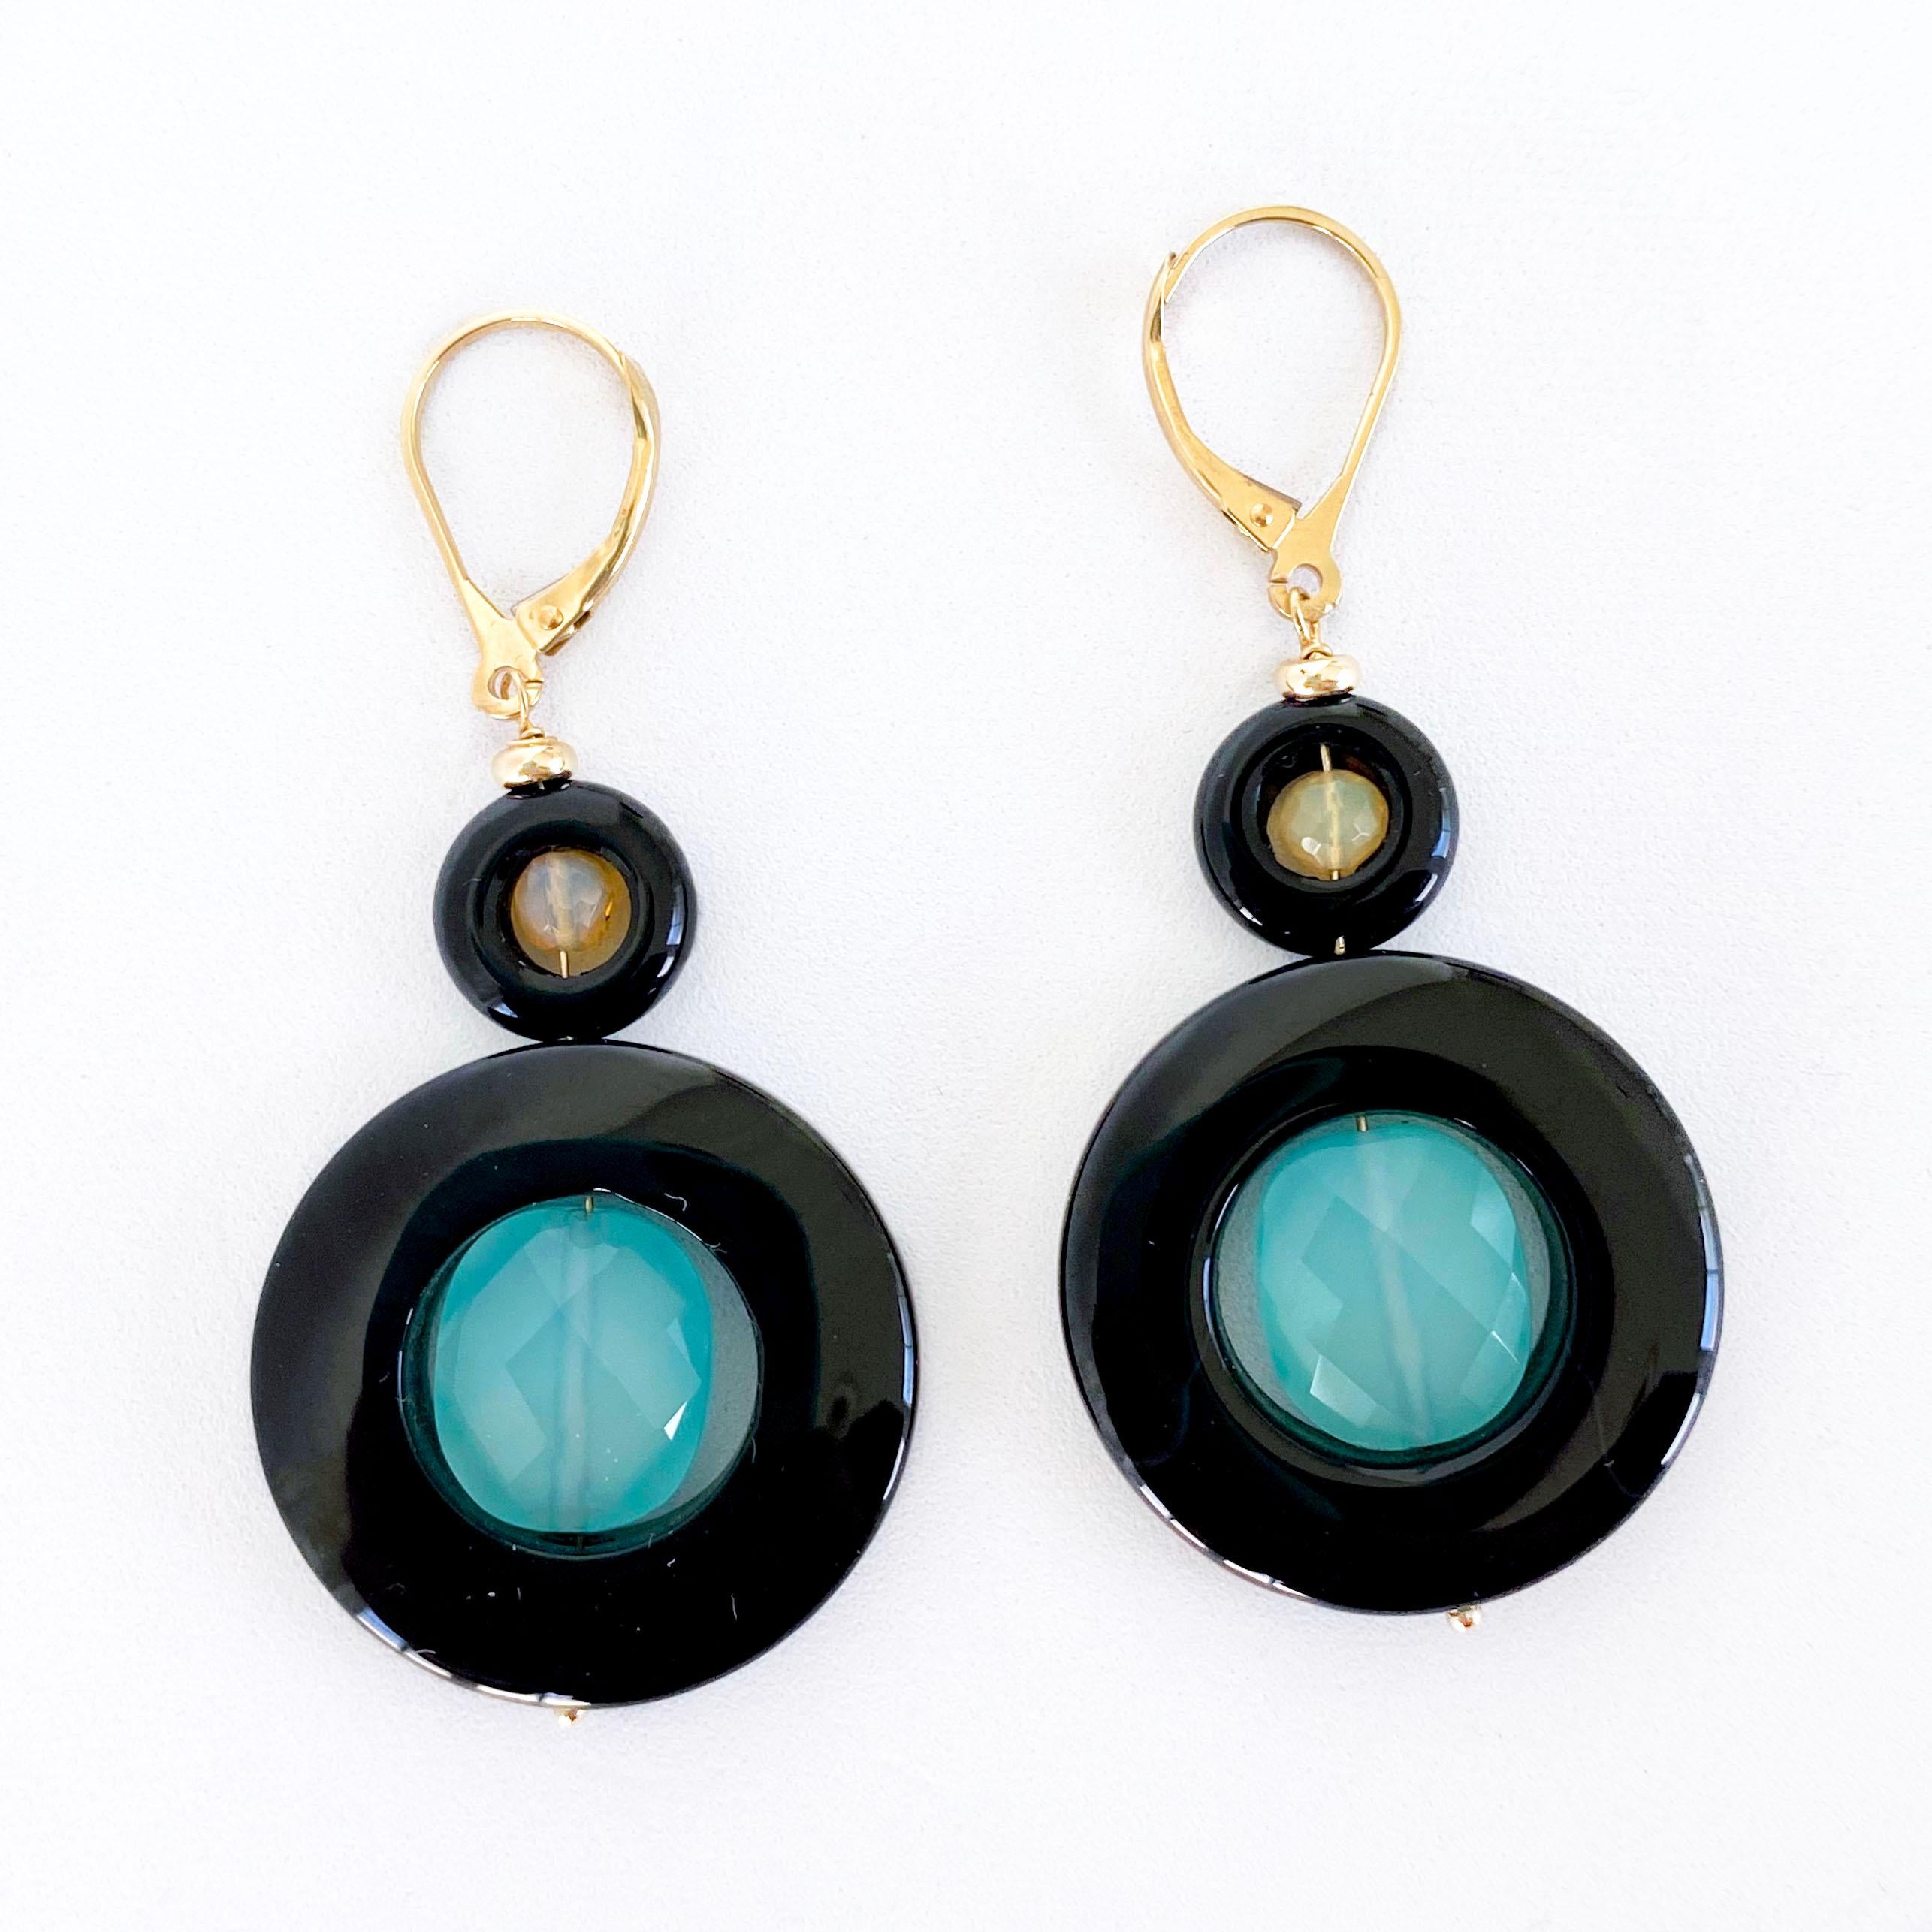 Schönes und farbenfrohes Paar Ohrringe von Marina J.
Dieses Paar ist mit schwarzem Onyx 